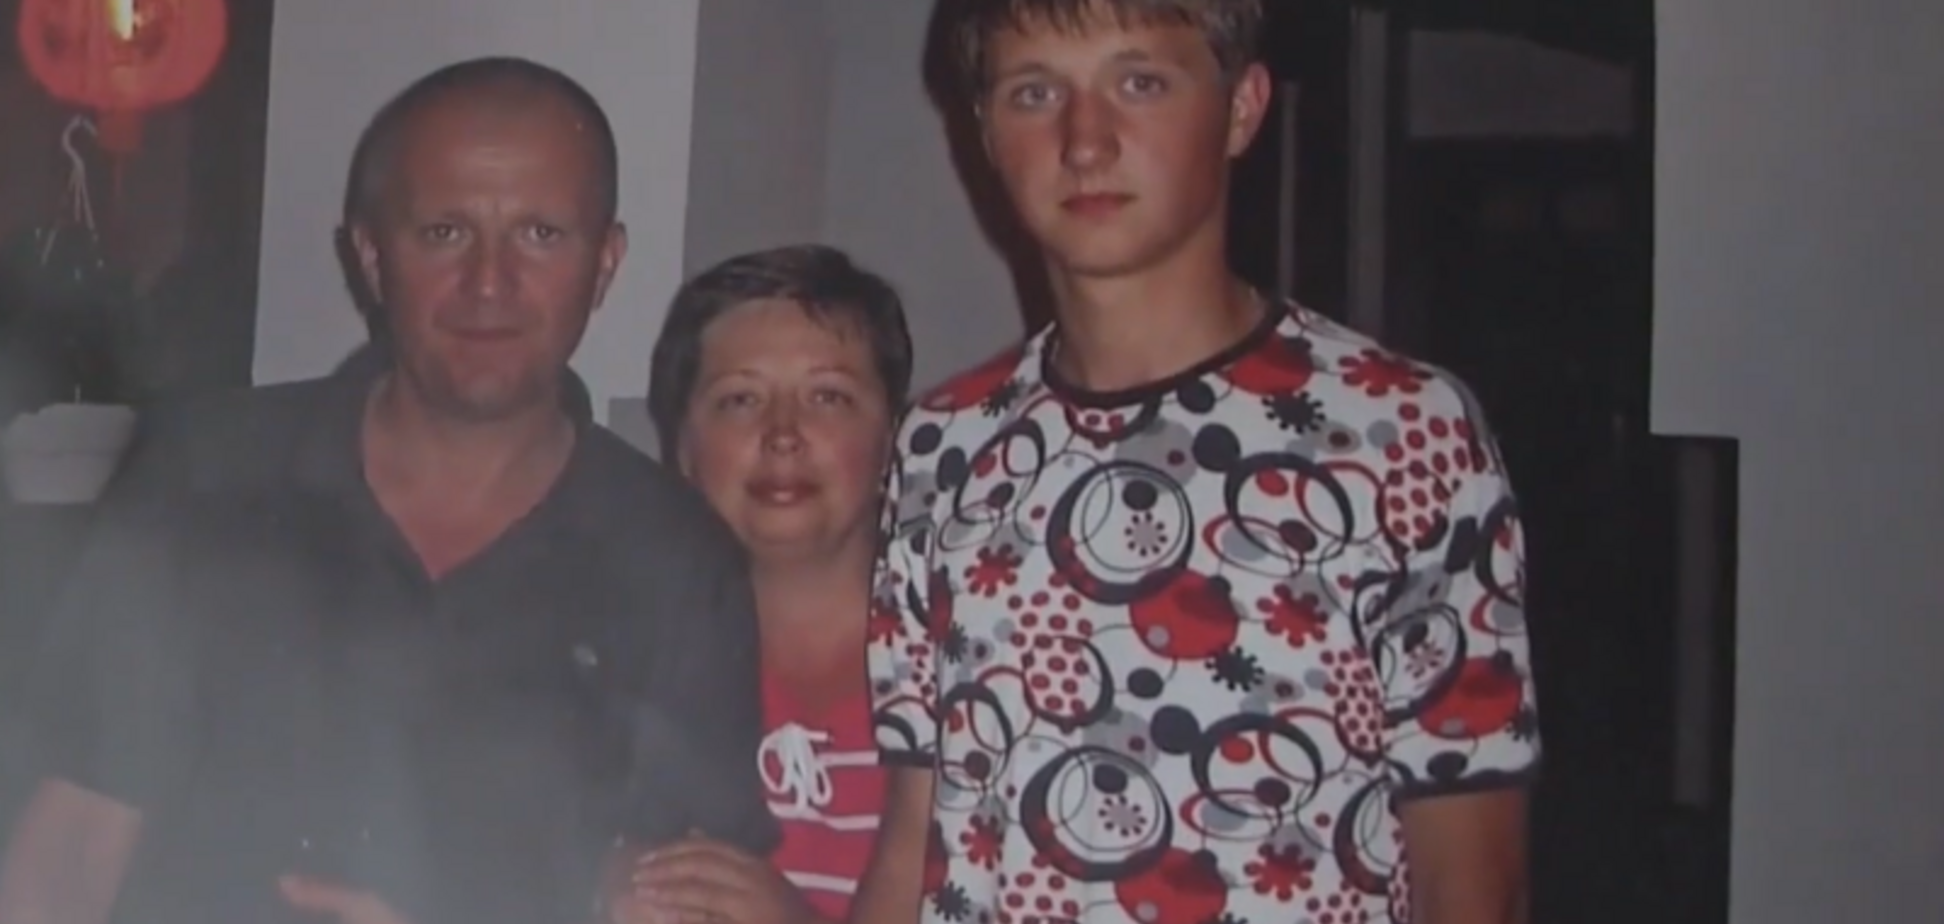 Сердце вновь забилось: украинка родила тройню после гибели сына на Донбассе